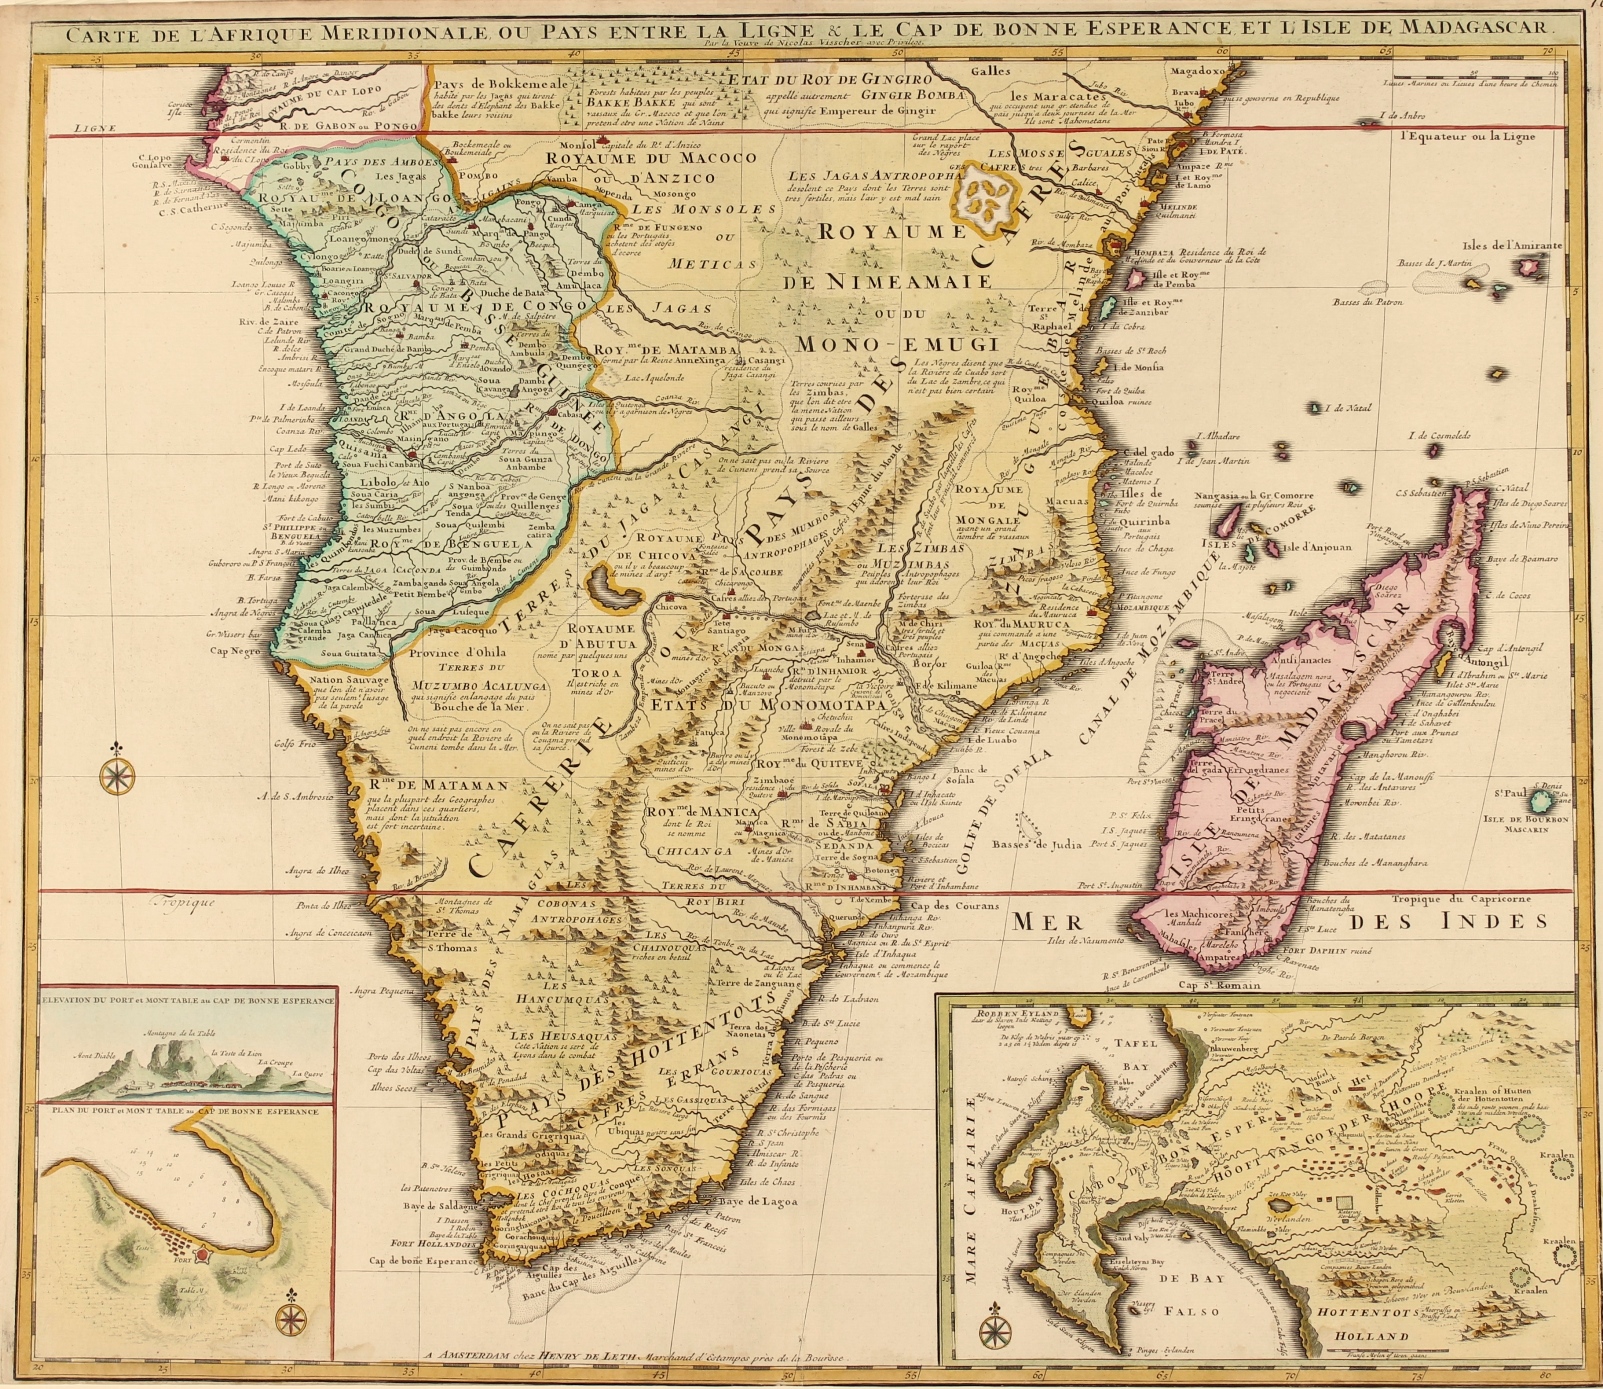 Leth-- Hendrick de - Southern Africa, Cape of Good Hope - Visscher/De Leth, c. 1740